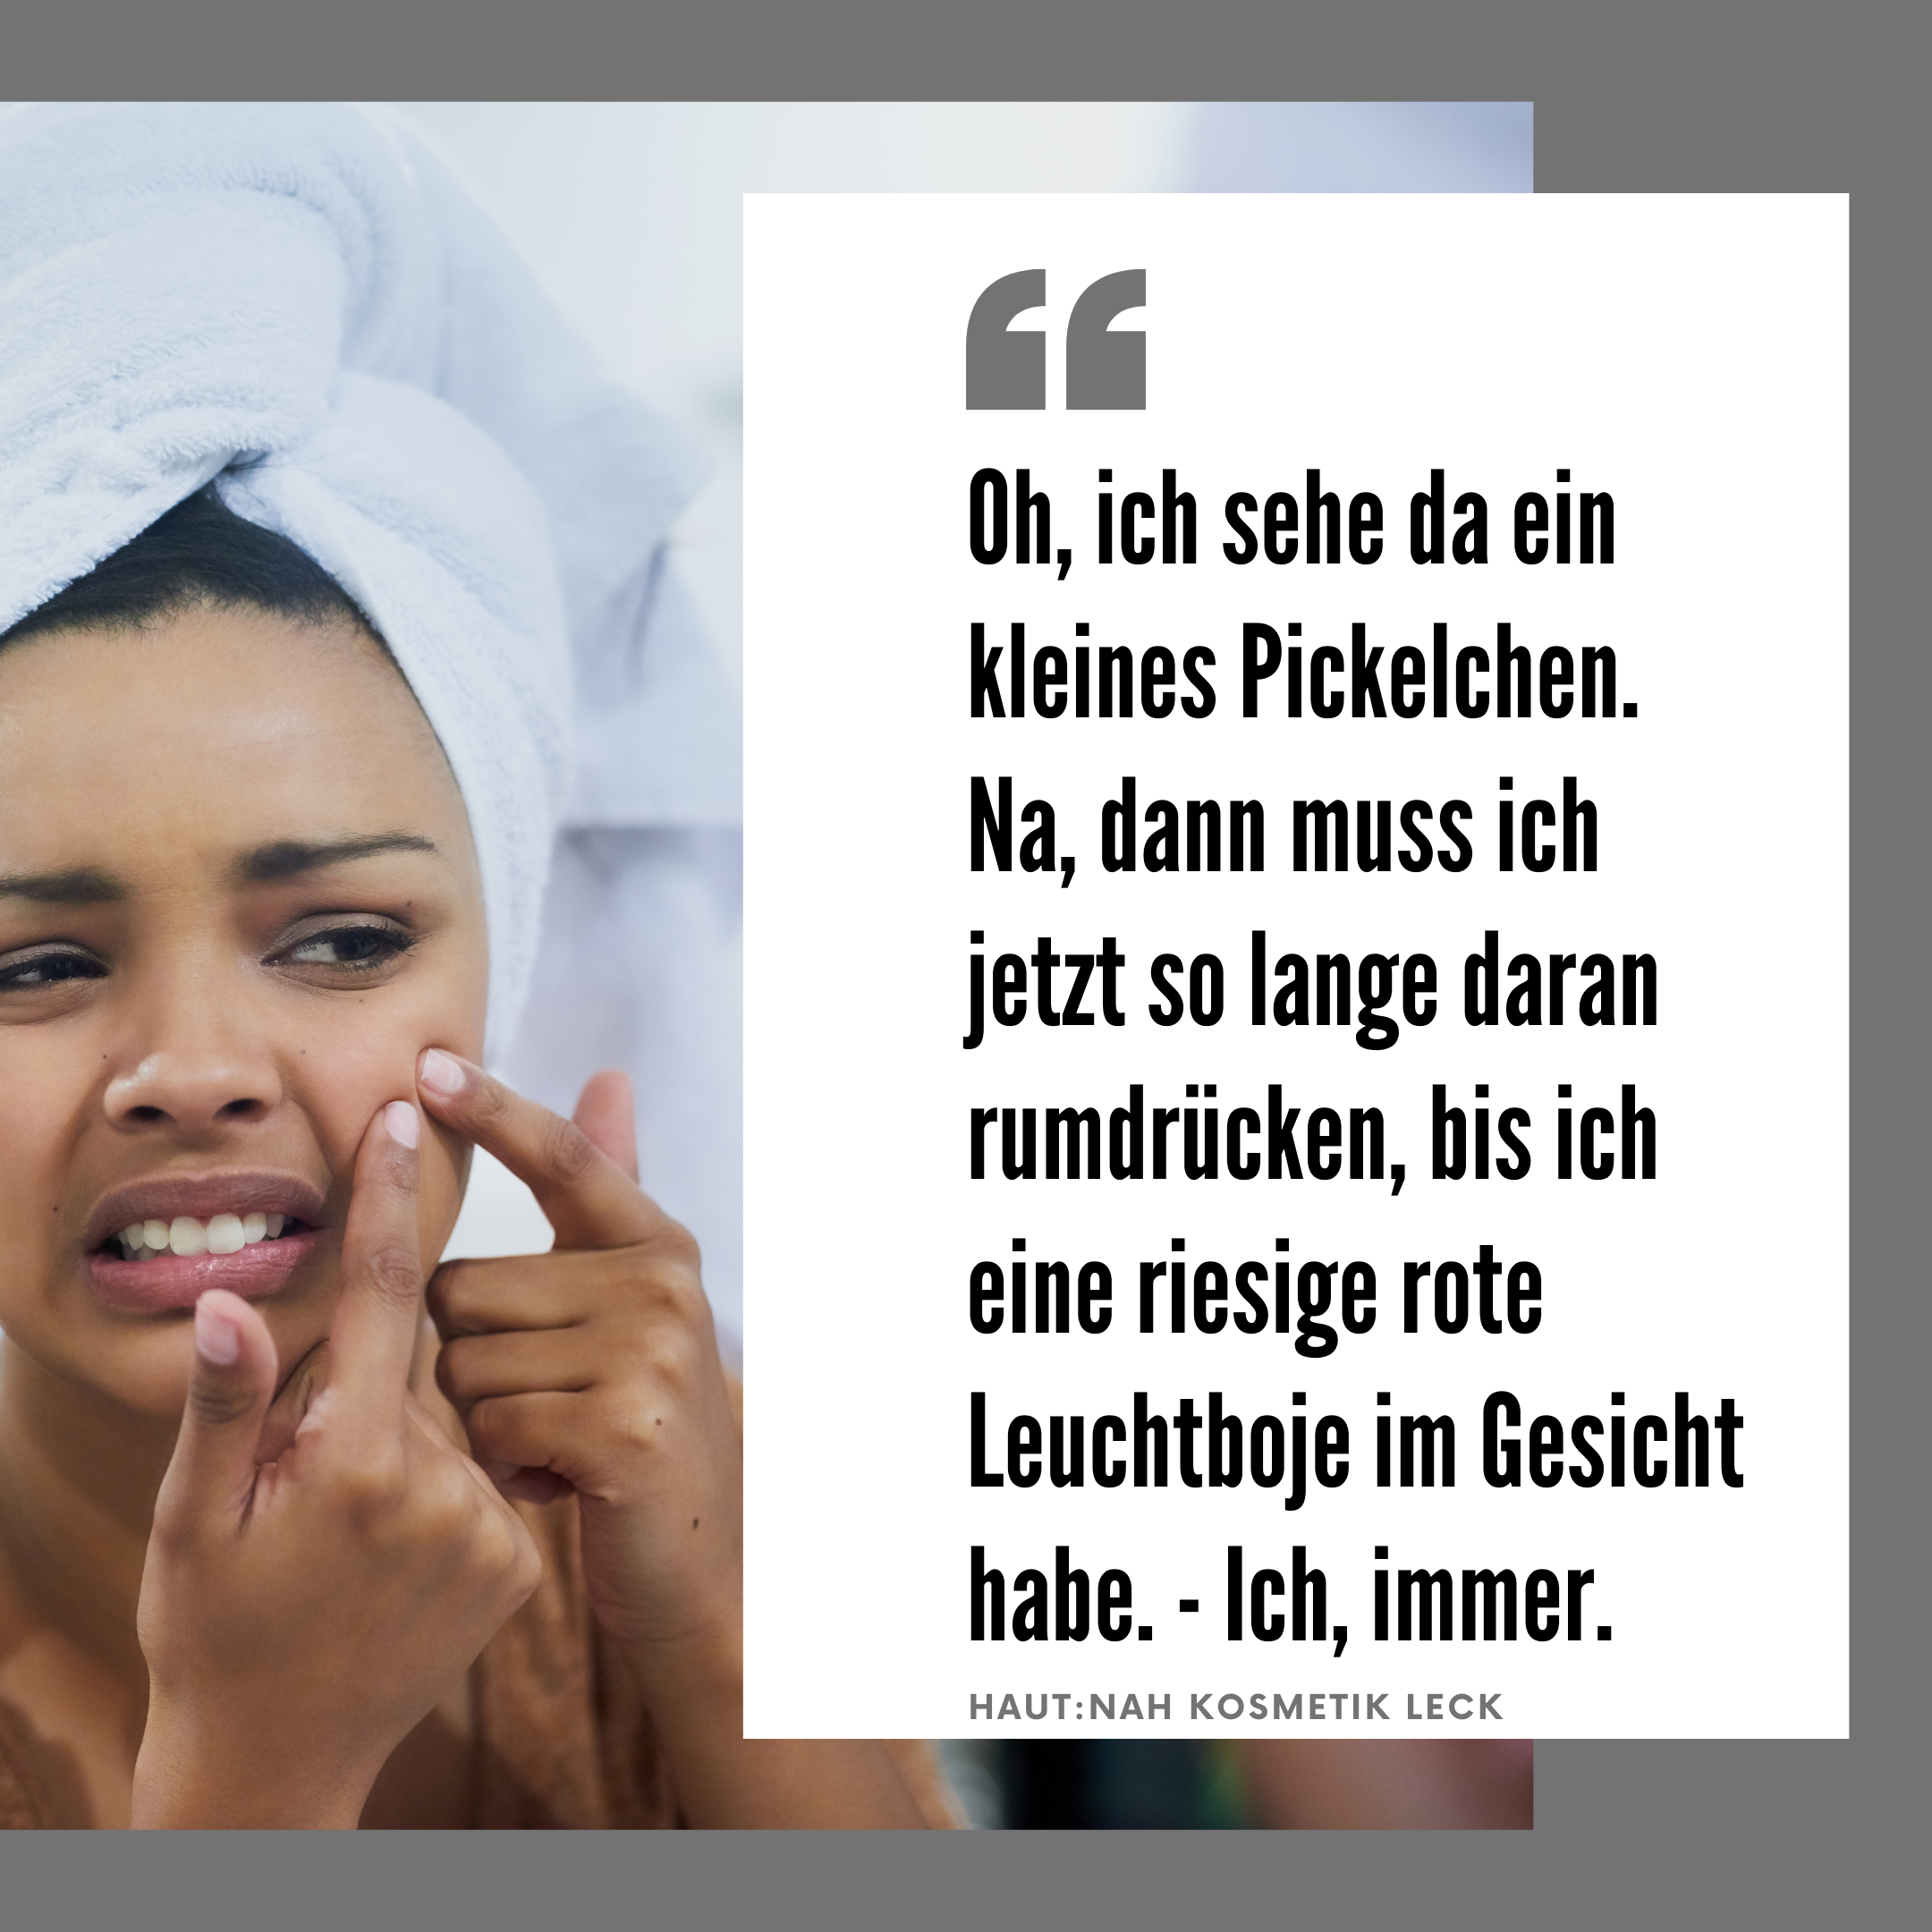 Featured image for “Ohhhh ein Pickel! Bitte nicht dran rumdrücken!”